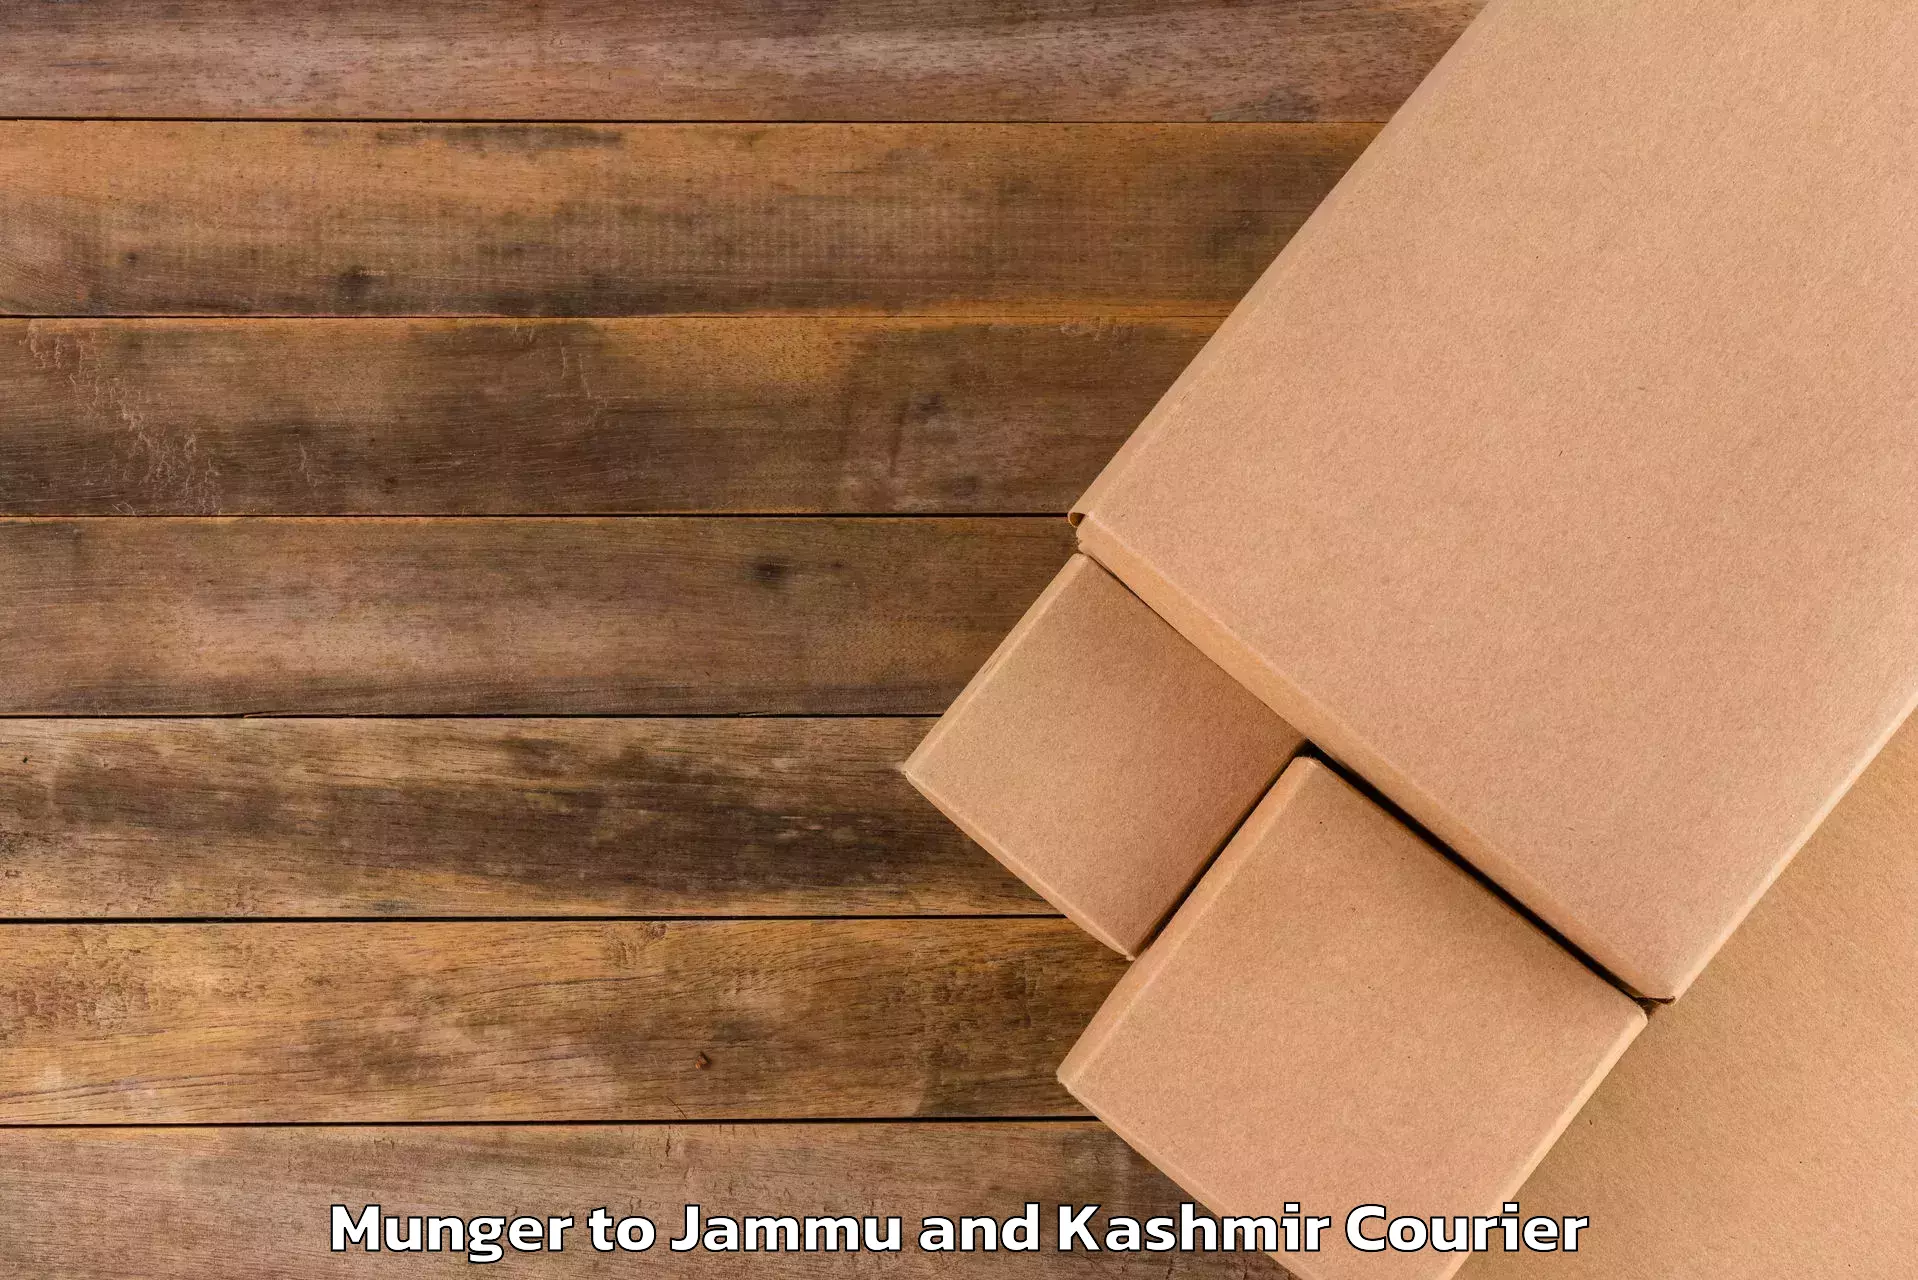 Door-to-door baggage service Munger to Jammu and Kashmir